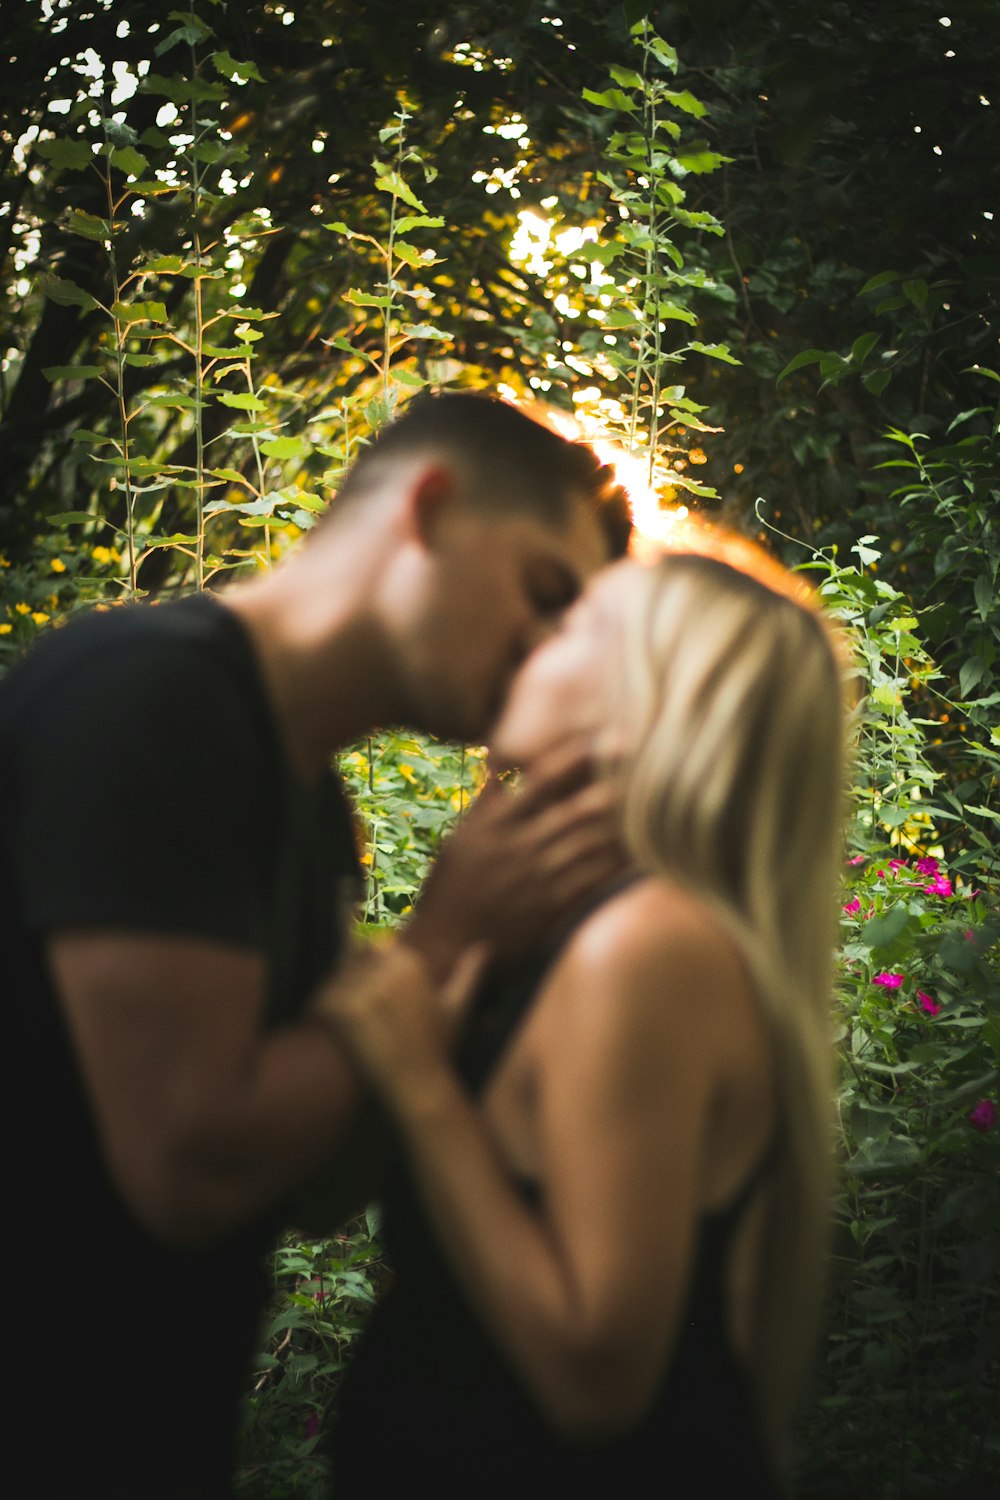 Homem e mulher se beijando sob árvores verdes durante o dia